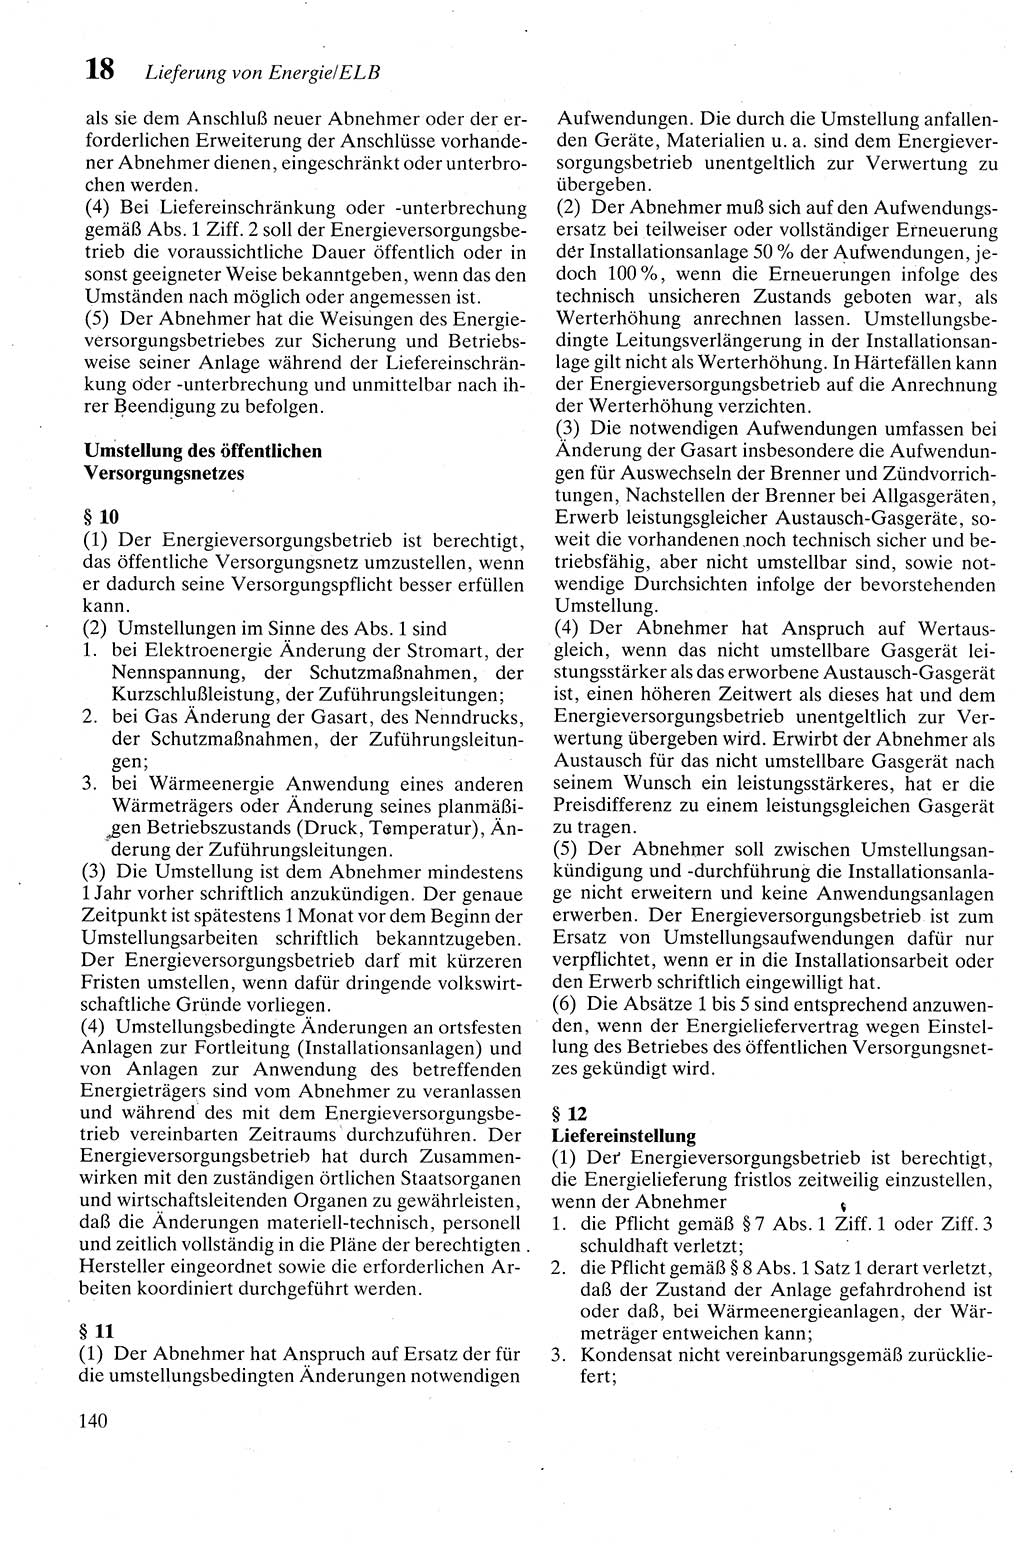 Zivilgesetzbuch (ZVG) sowie angrenzende Gesetze und Bestimmungen [Deutsche Demokratische Republik (DDR)] 1975, Seite 140 (ZGB Ges. Best. DDR 1975, S. 140)